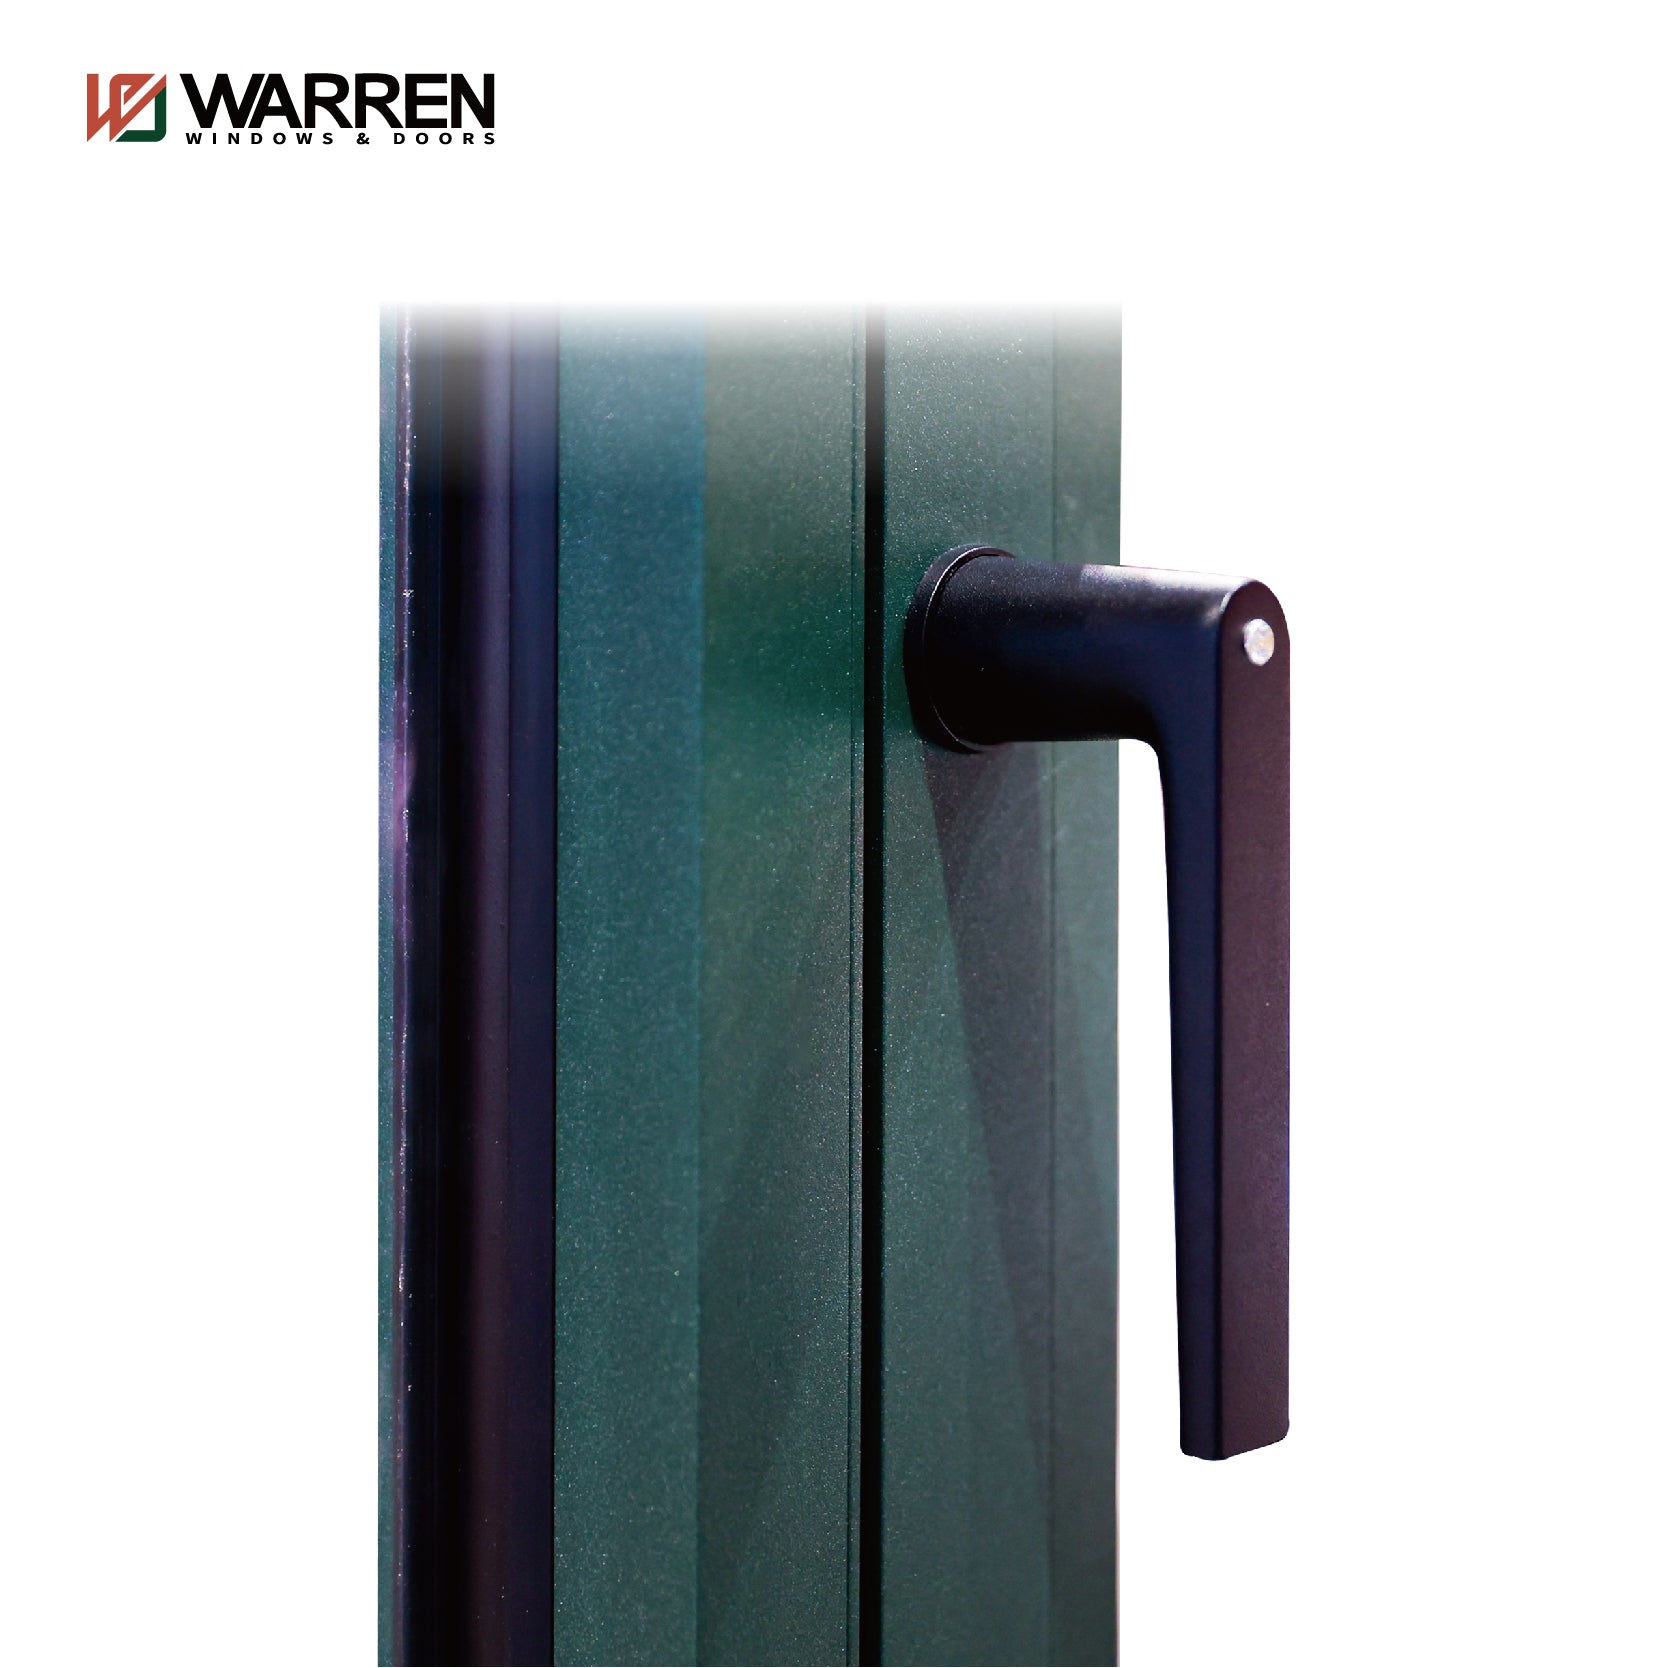 Warren 36x72 window NFRC Certificate thermal insulation aluminum casement picture window